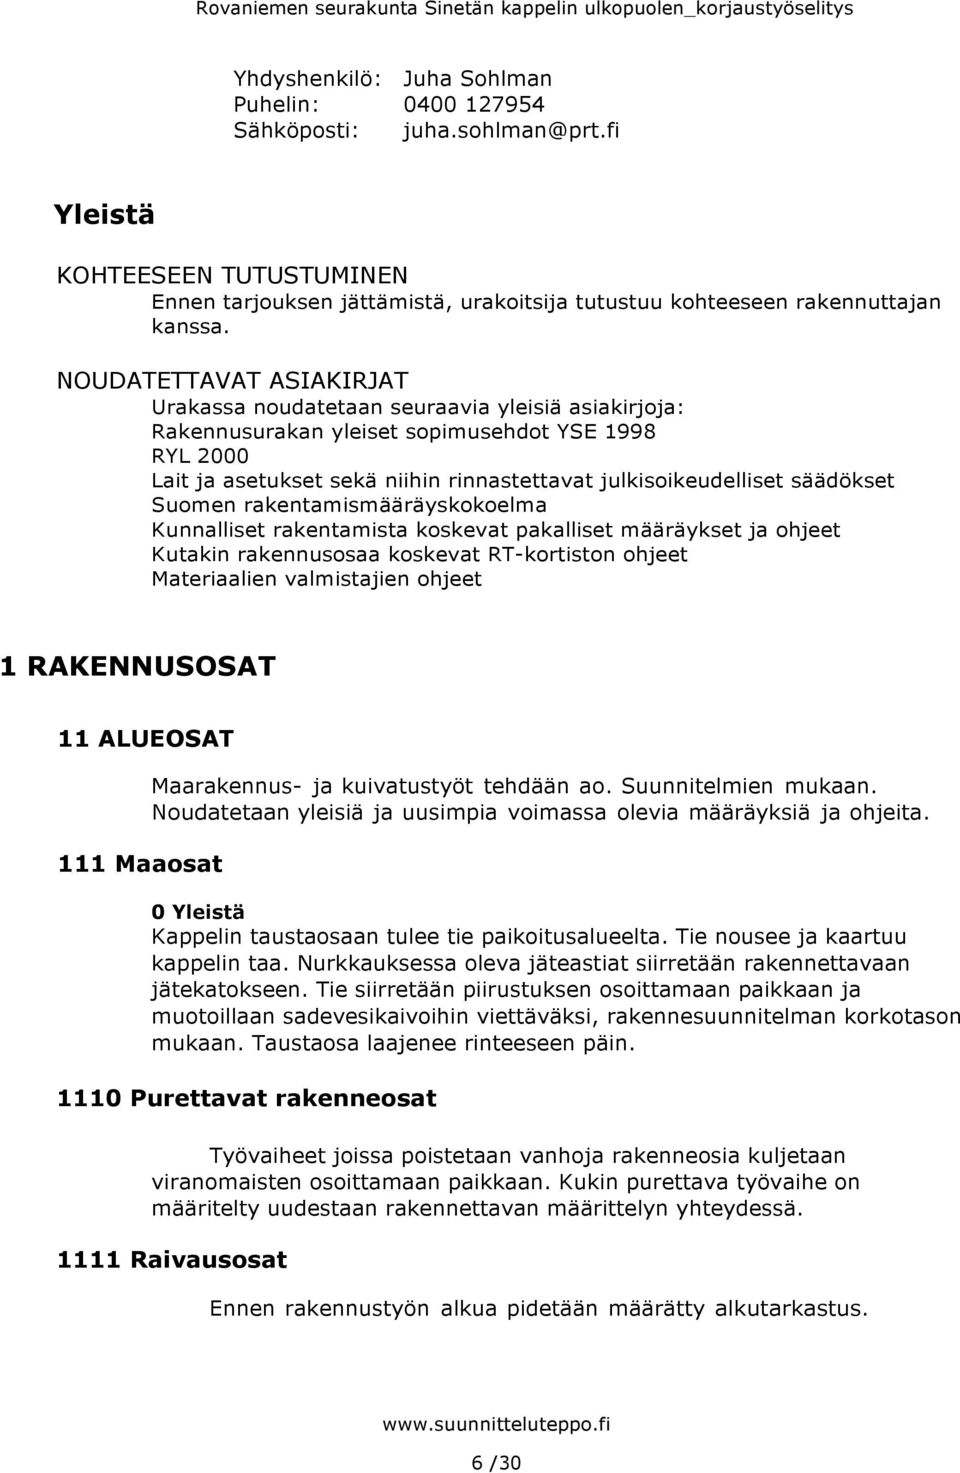 säädökset Suomen rakentamismääräyskokoelma Kunnalliset rakentamista koskevat pakalliset määräykset ja ohjeet Kutakin rakennusosaa koskevat RT-kortiston ohjeet Materiaalien valmistajien ohjeet 1